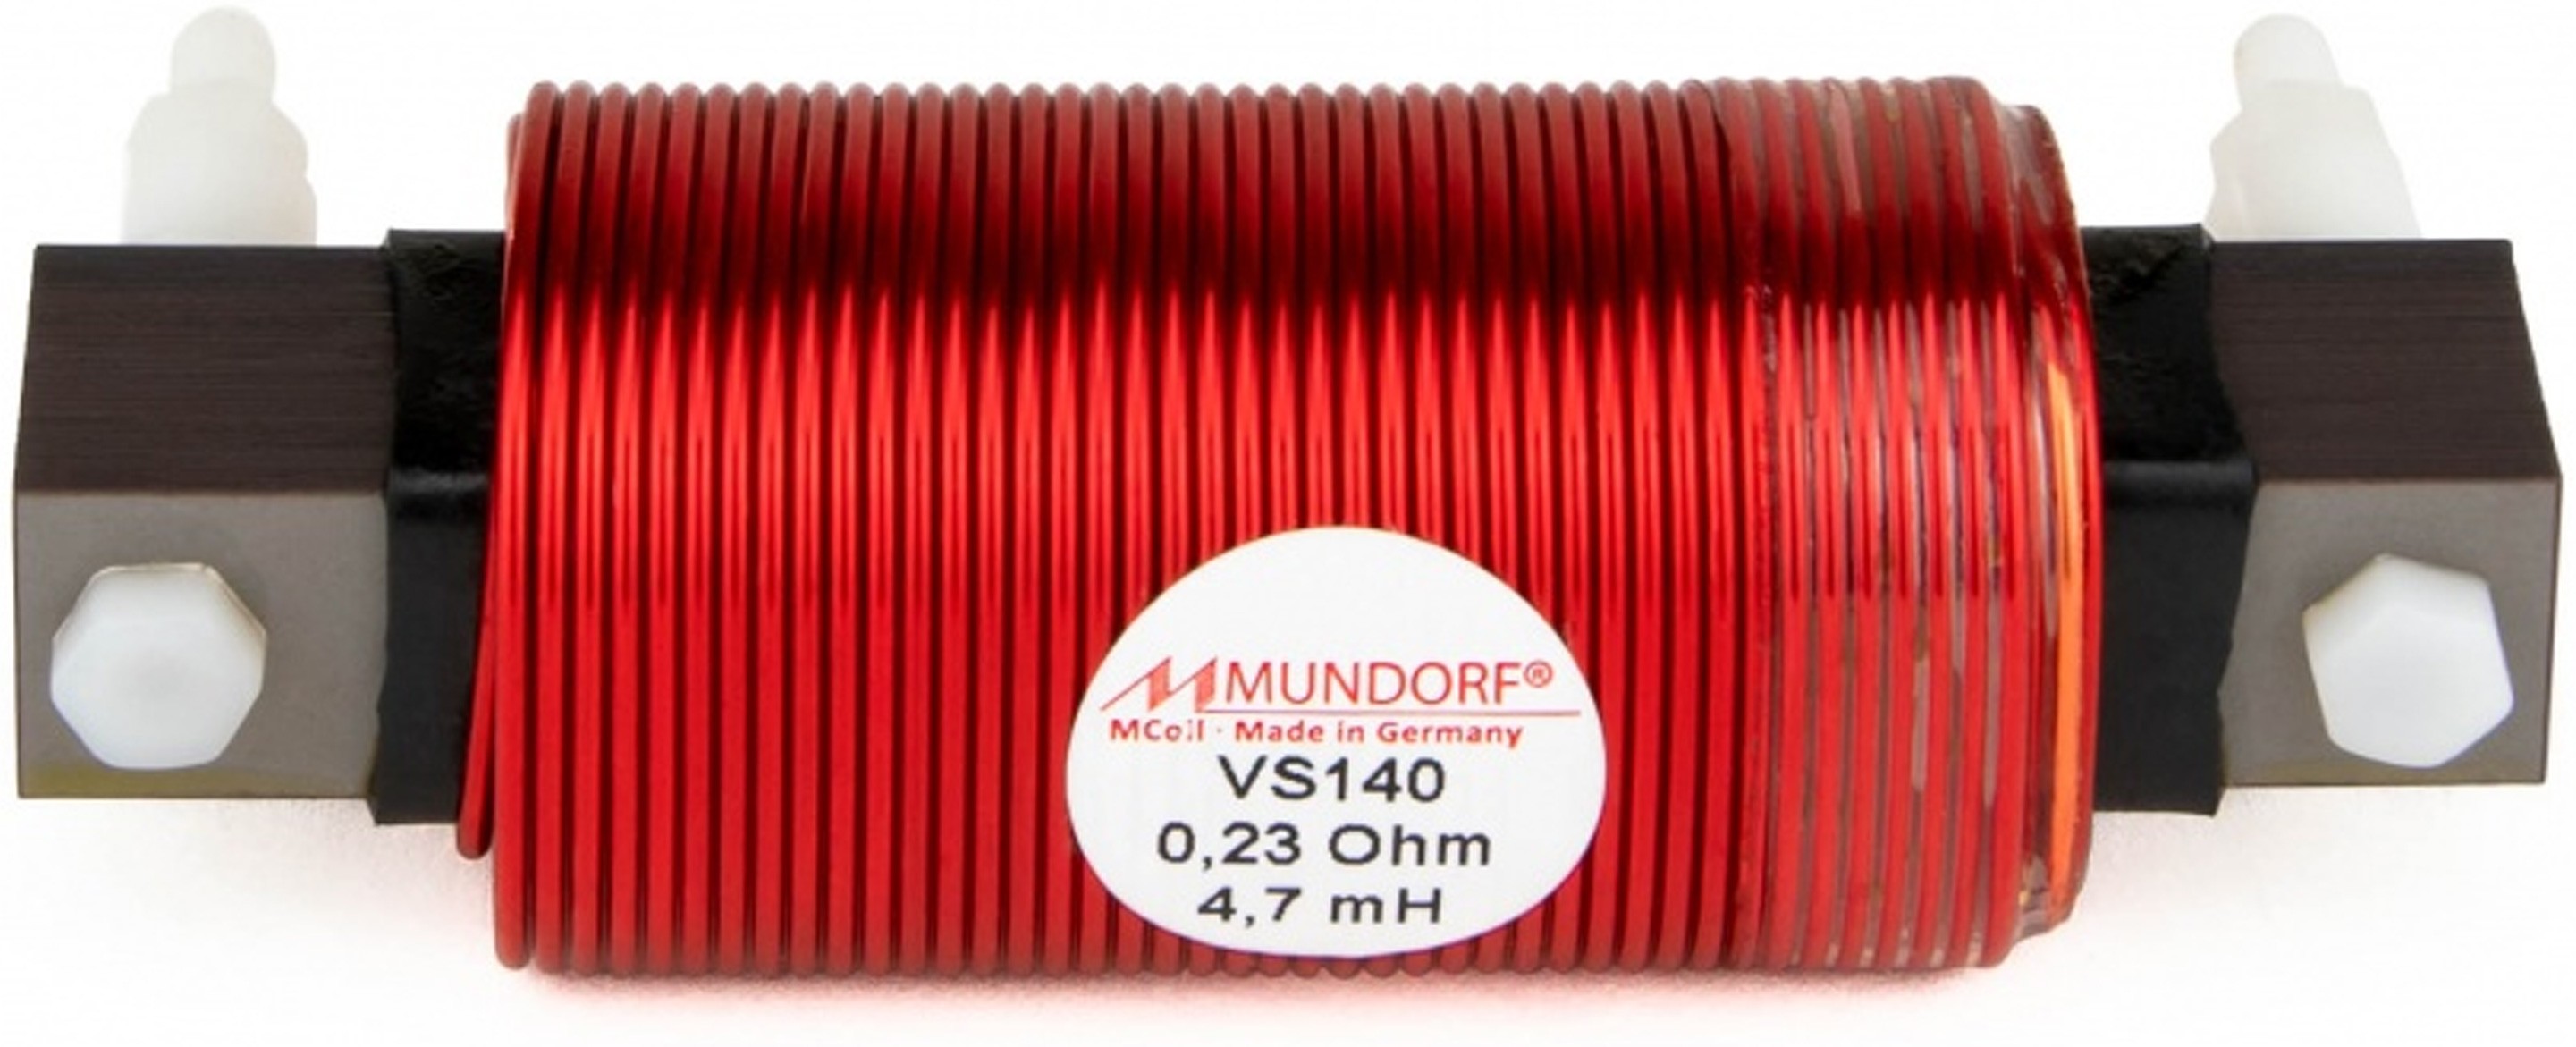 MUNDORF VS140-1.8 MCOIL ICORE Copper Coil Feron Core 1.8mH